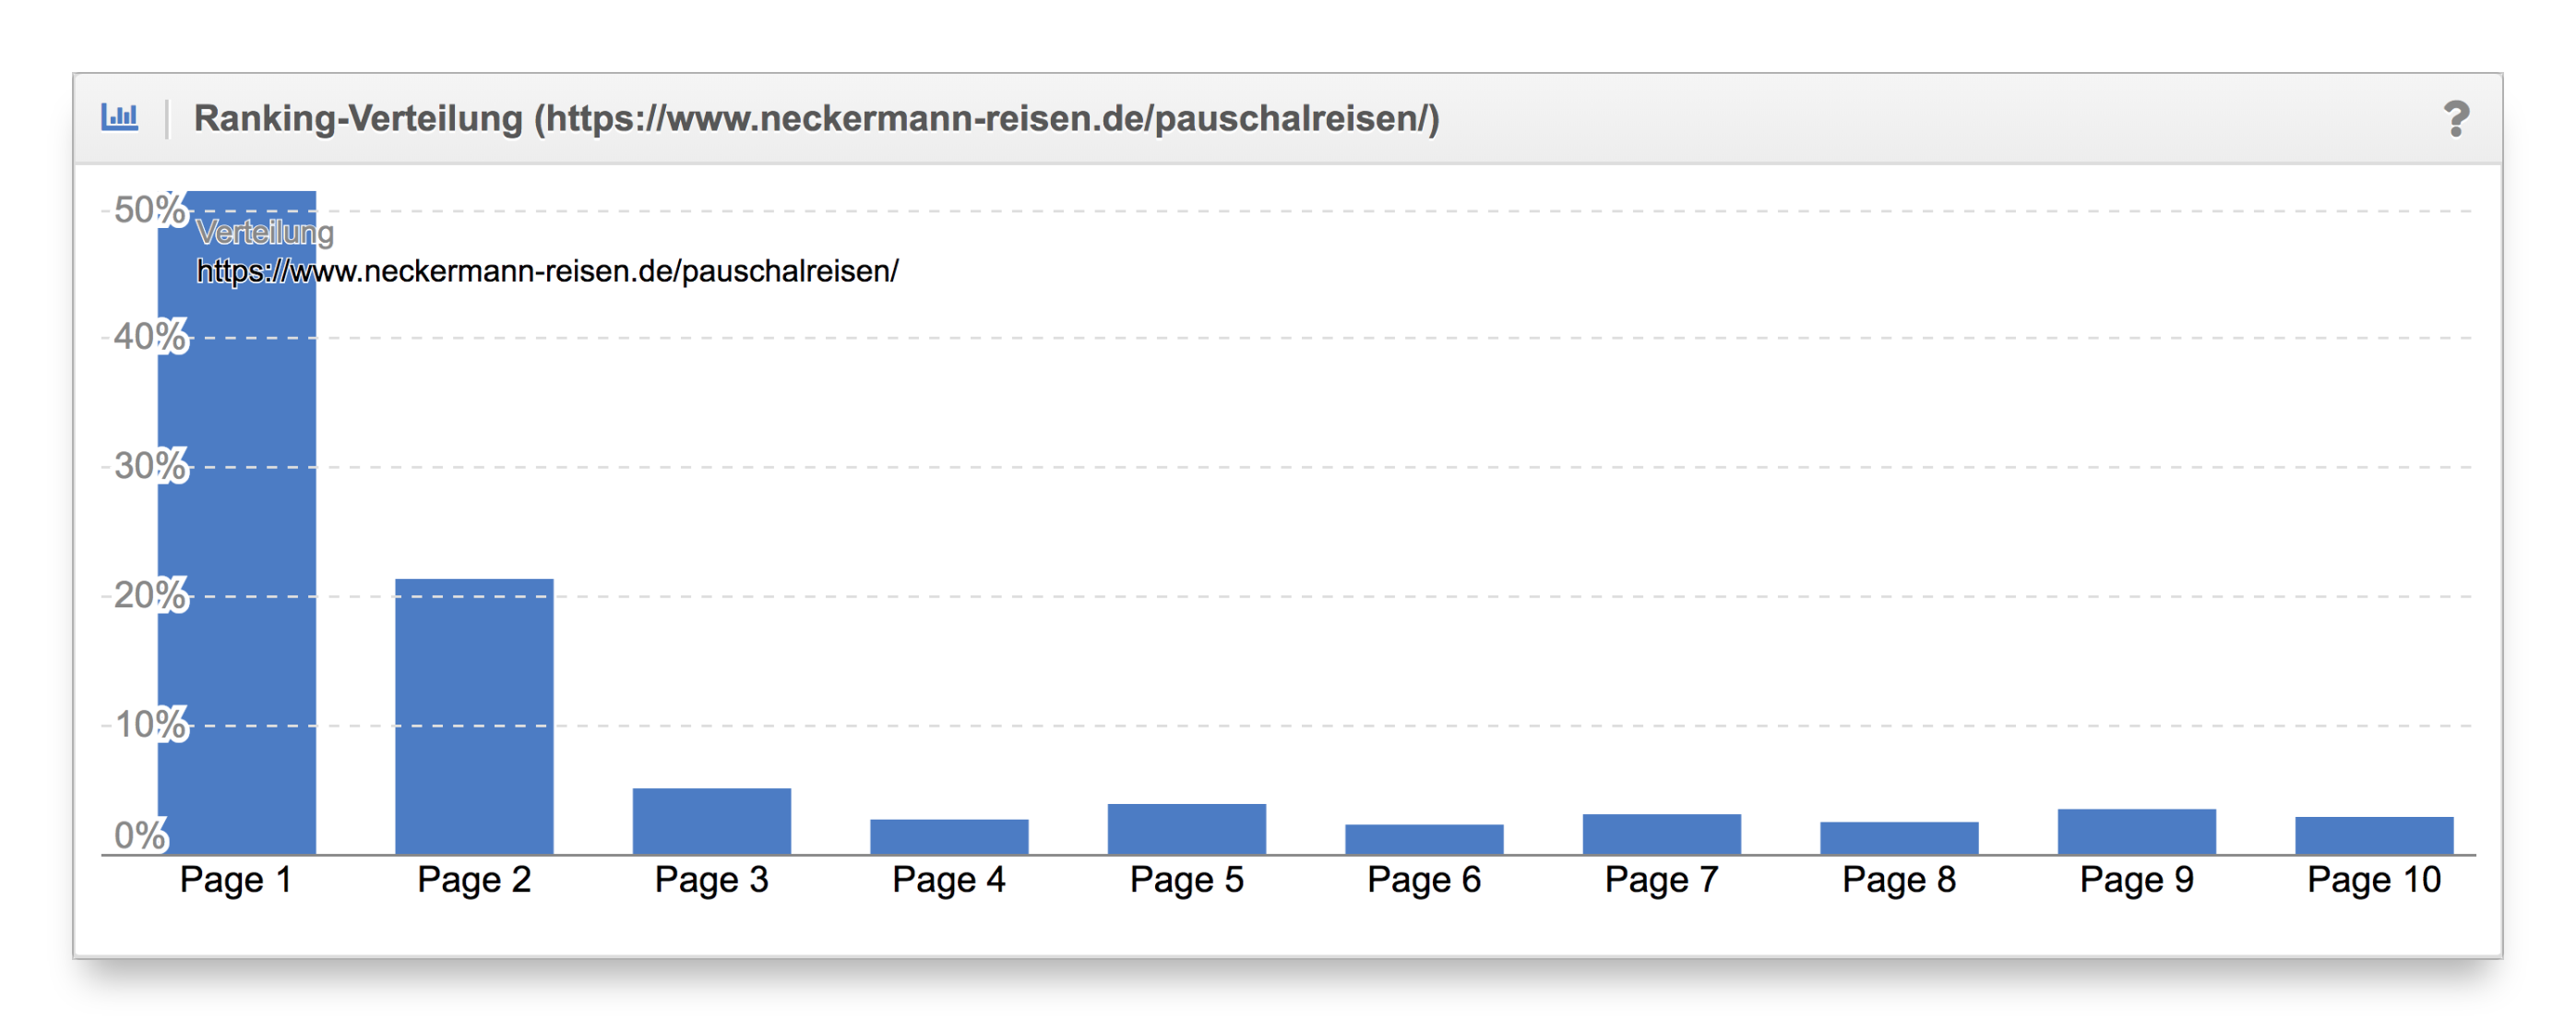 Vergleich Ranking-Verteilung Content-Formate neckermann.de